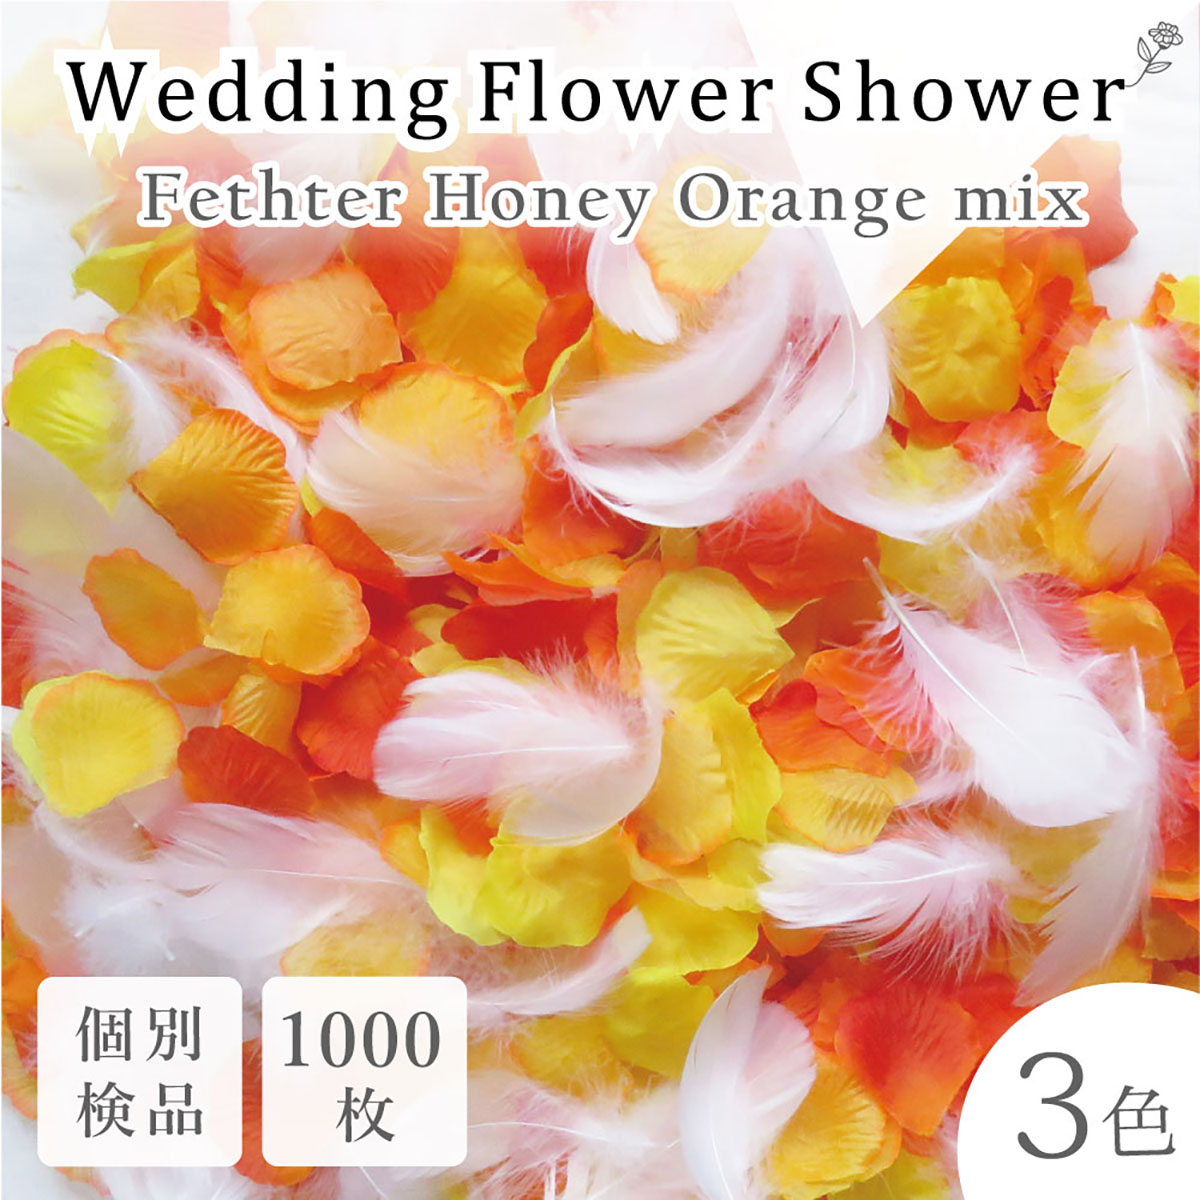 出色 5色セット フラワーシャワー 500枚 花びら 造花 ウエディング 誕生日